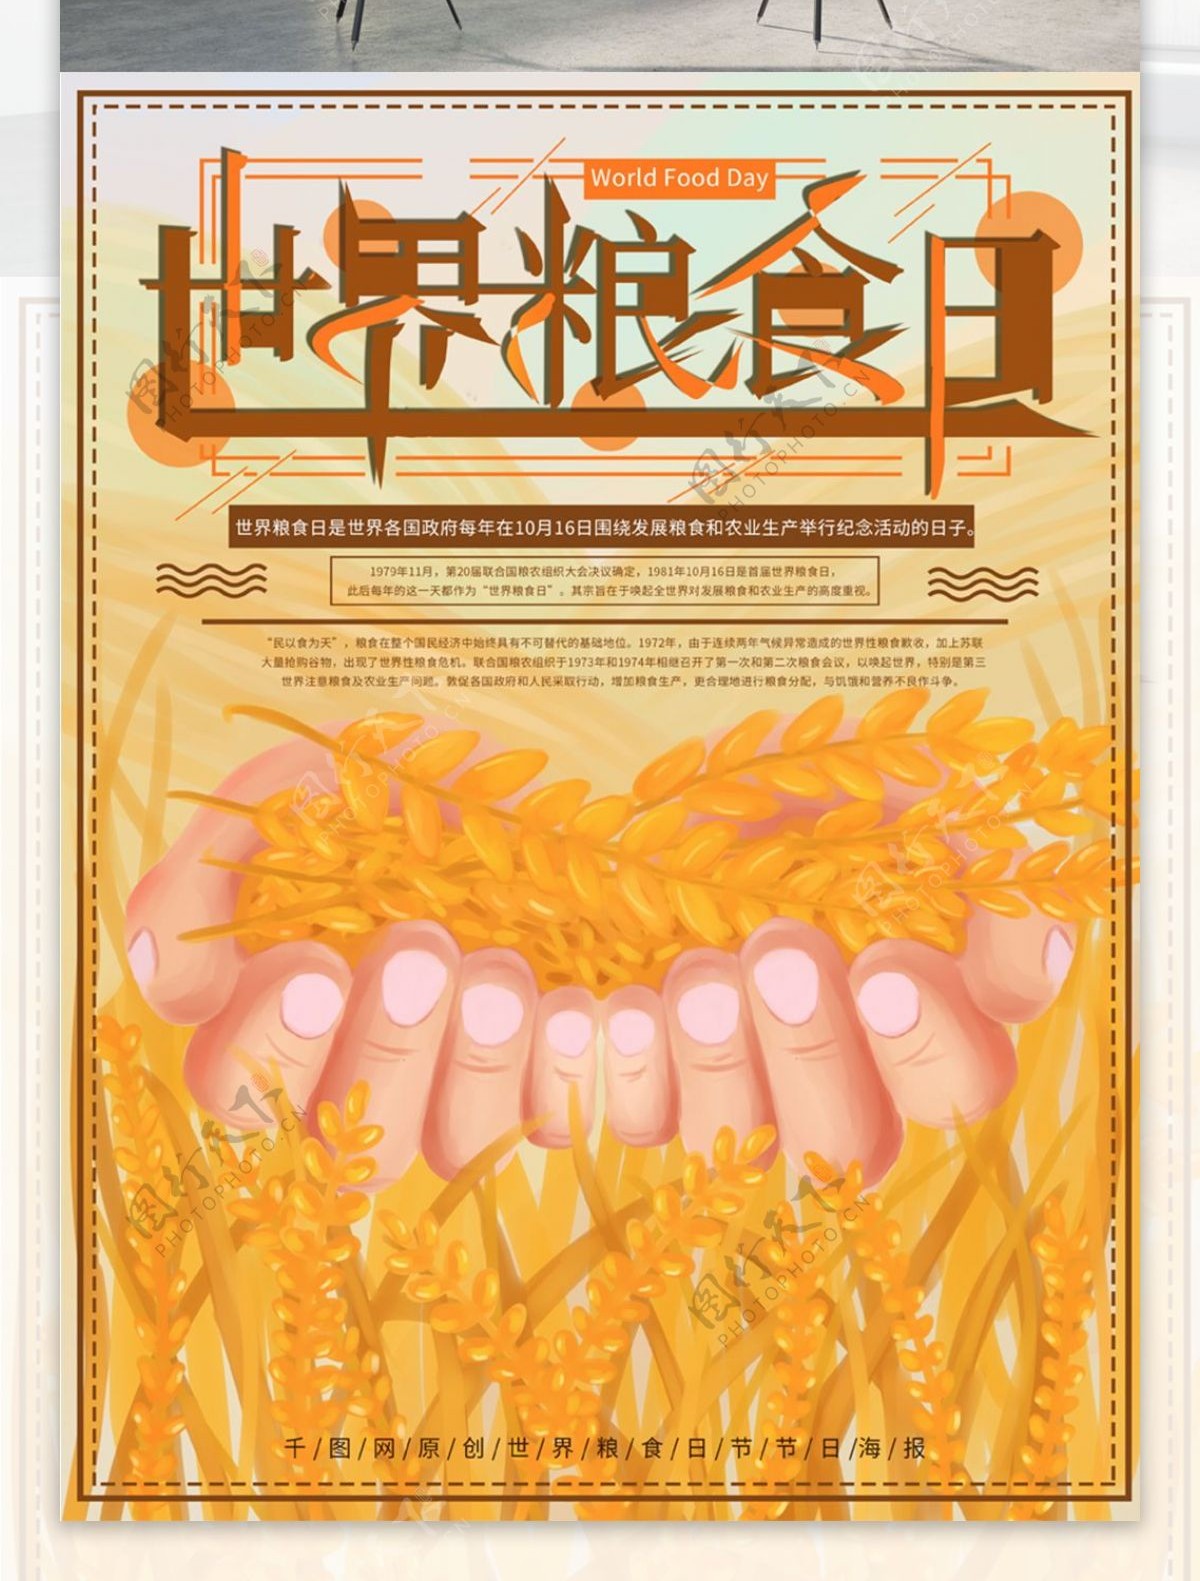 原创手绘世界粮食日节日海报